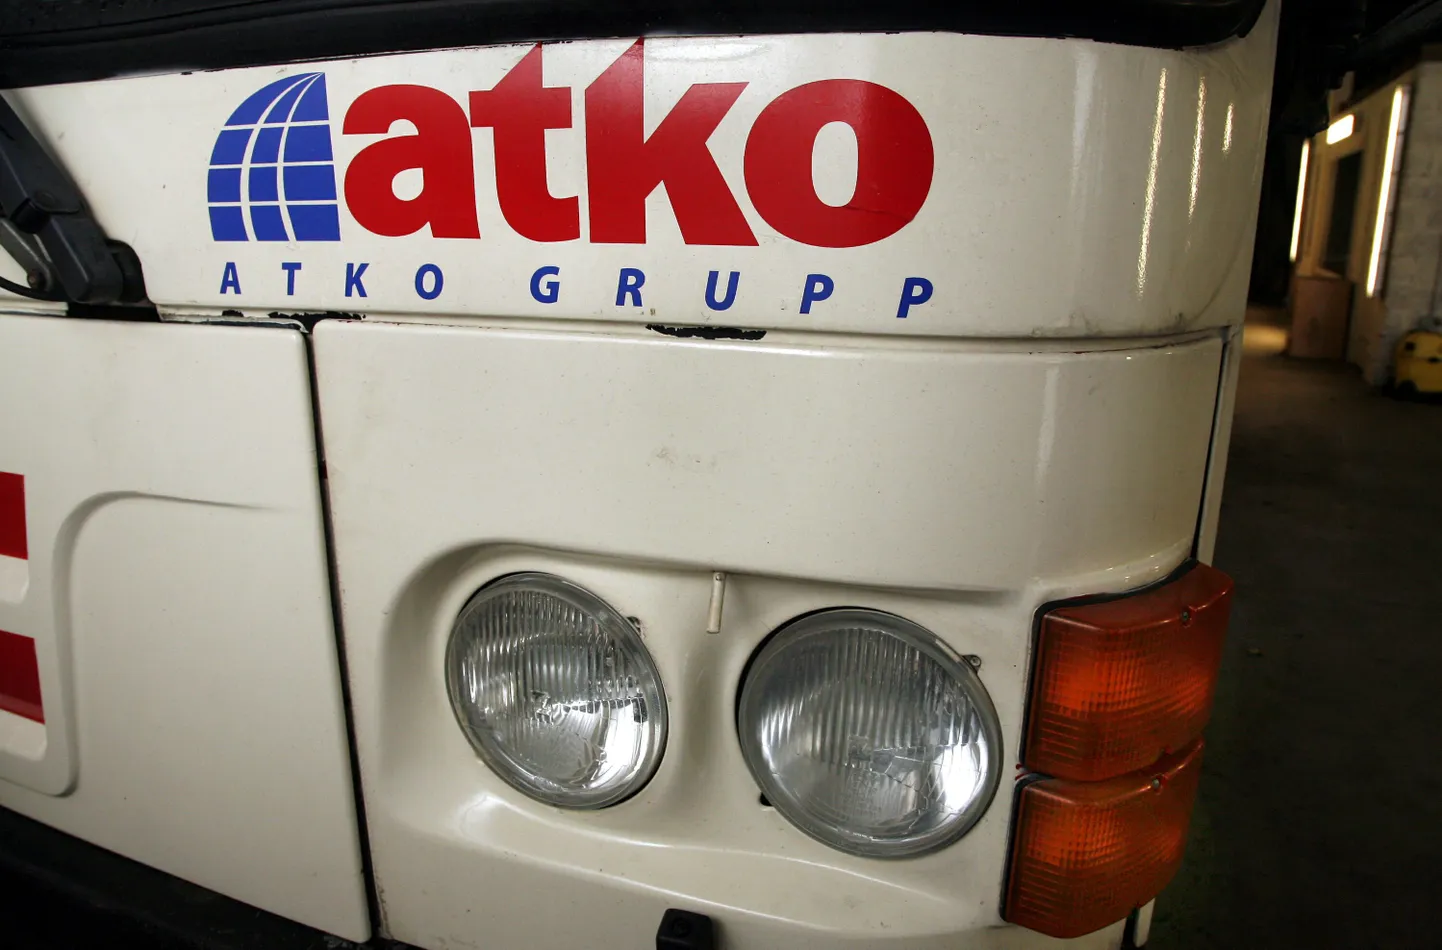 Sindi ja Pärnu vahel kurseerivat liini number 40 teenidavad aktsiaseltsi Atko Grupp tütarfirma bussid.